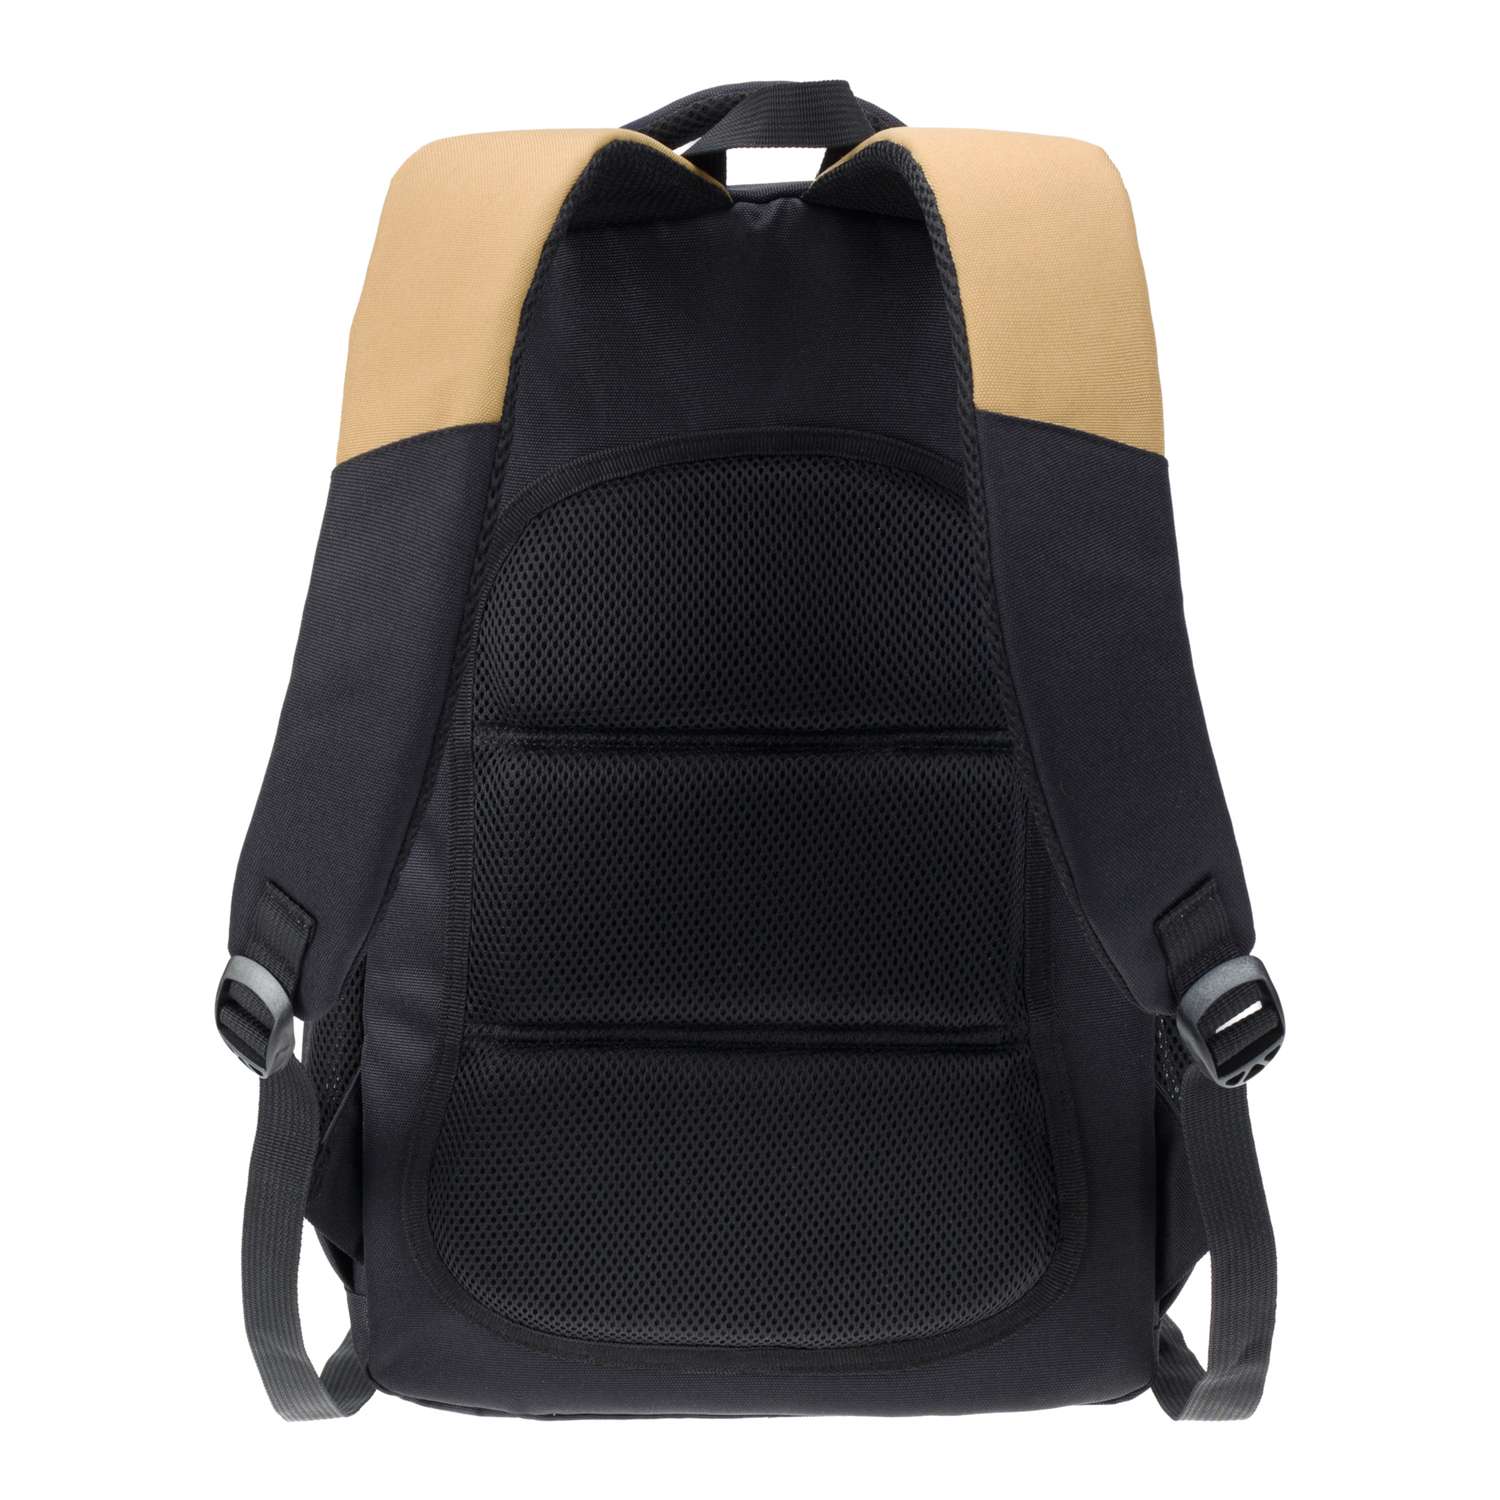 Рюкзак TORBER CLASS X черно-бежевый и мешок для сменной обуви в подарок - фото 5